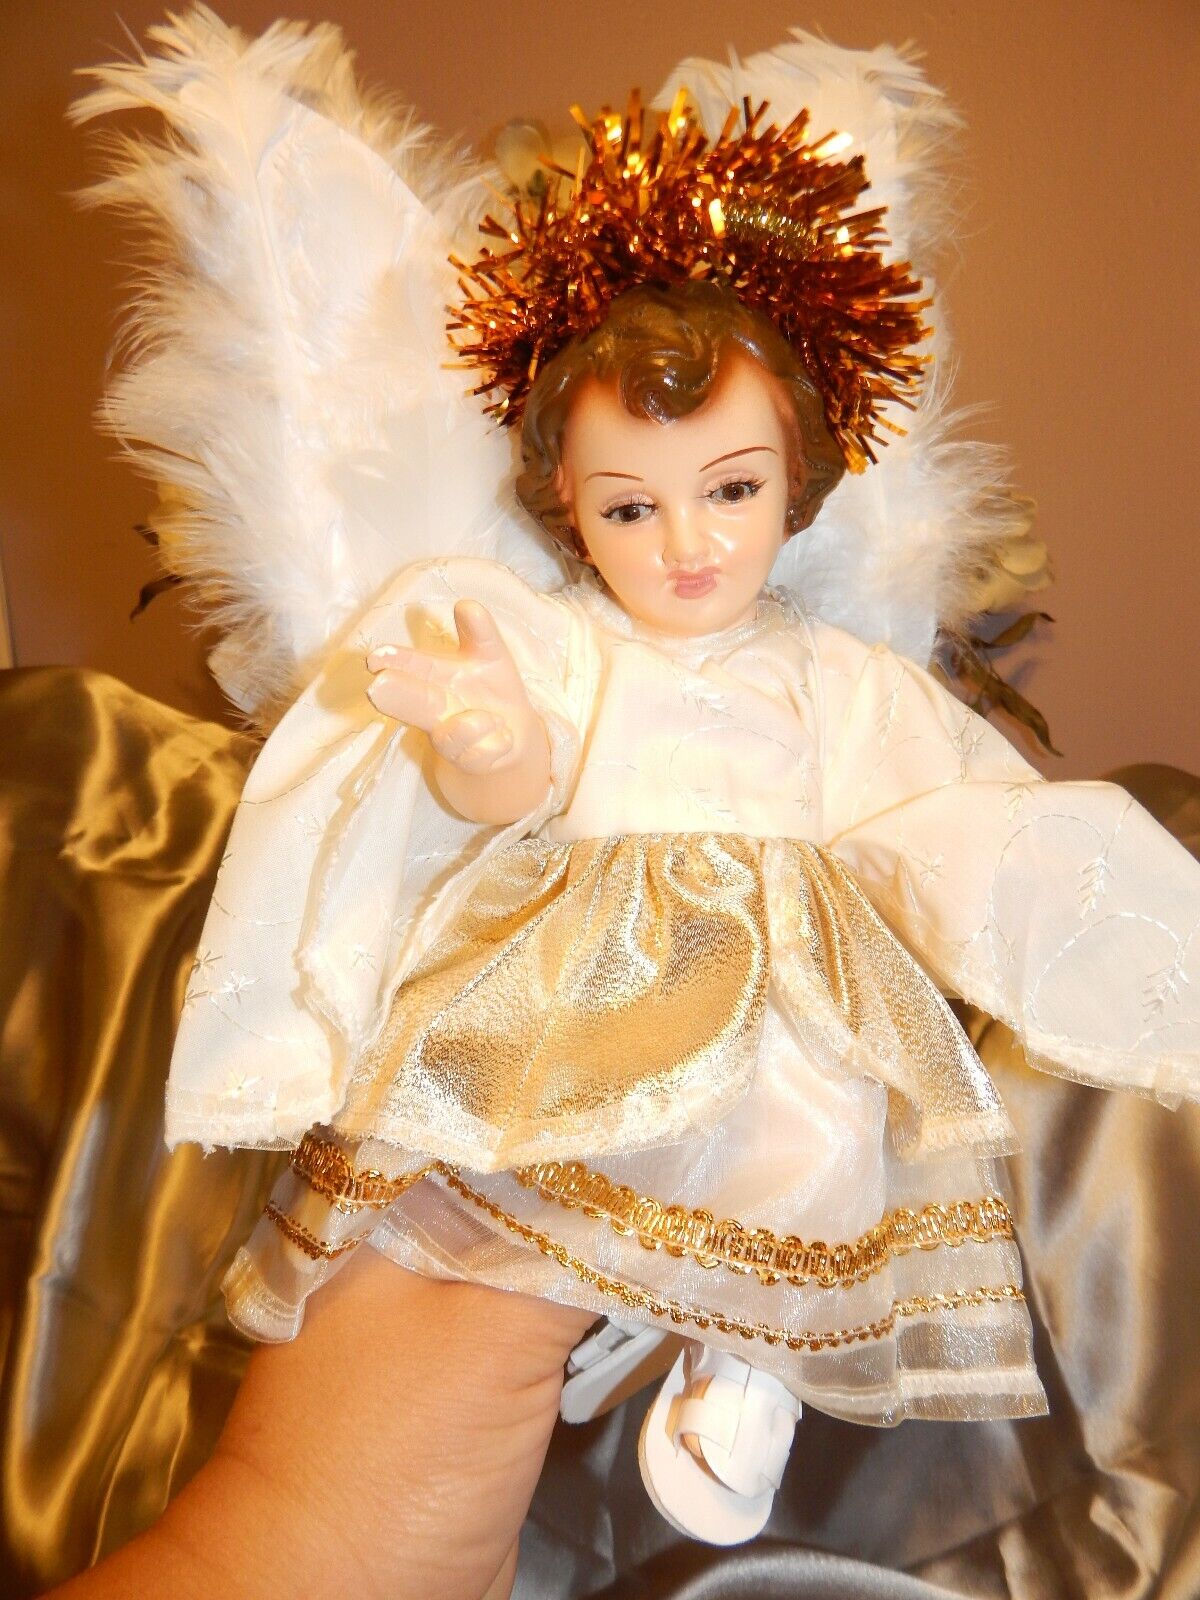 Angel del arpa Vestido para nino Dios baby Jesus dress medida 20 centimetros